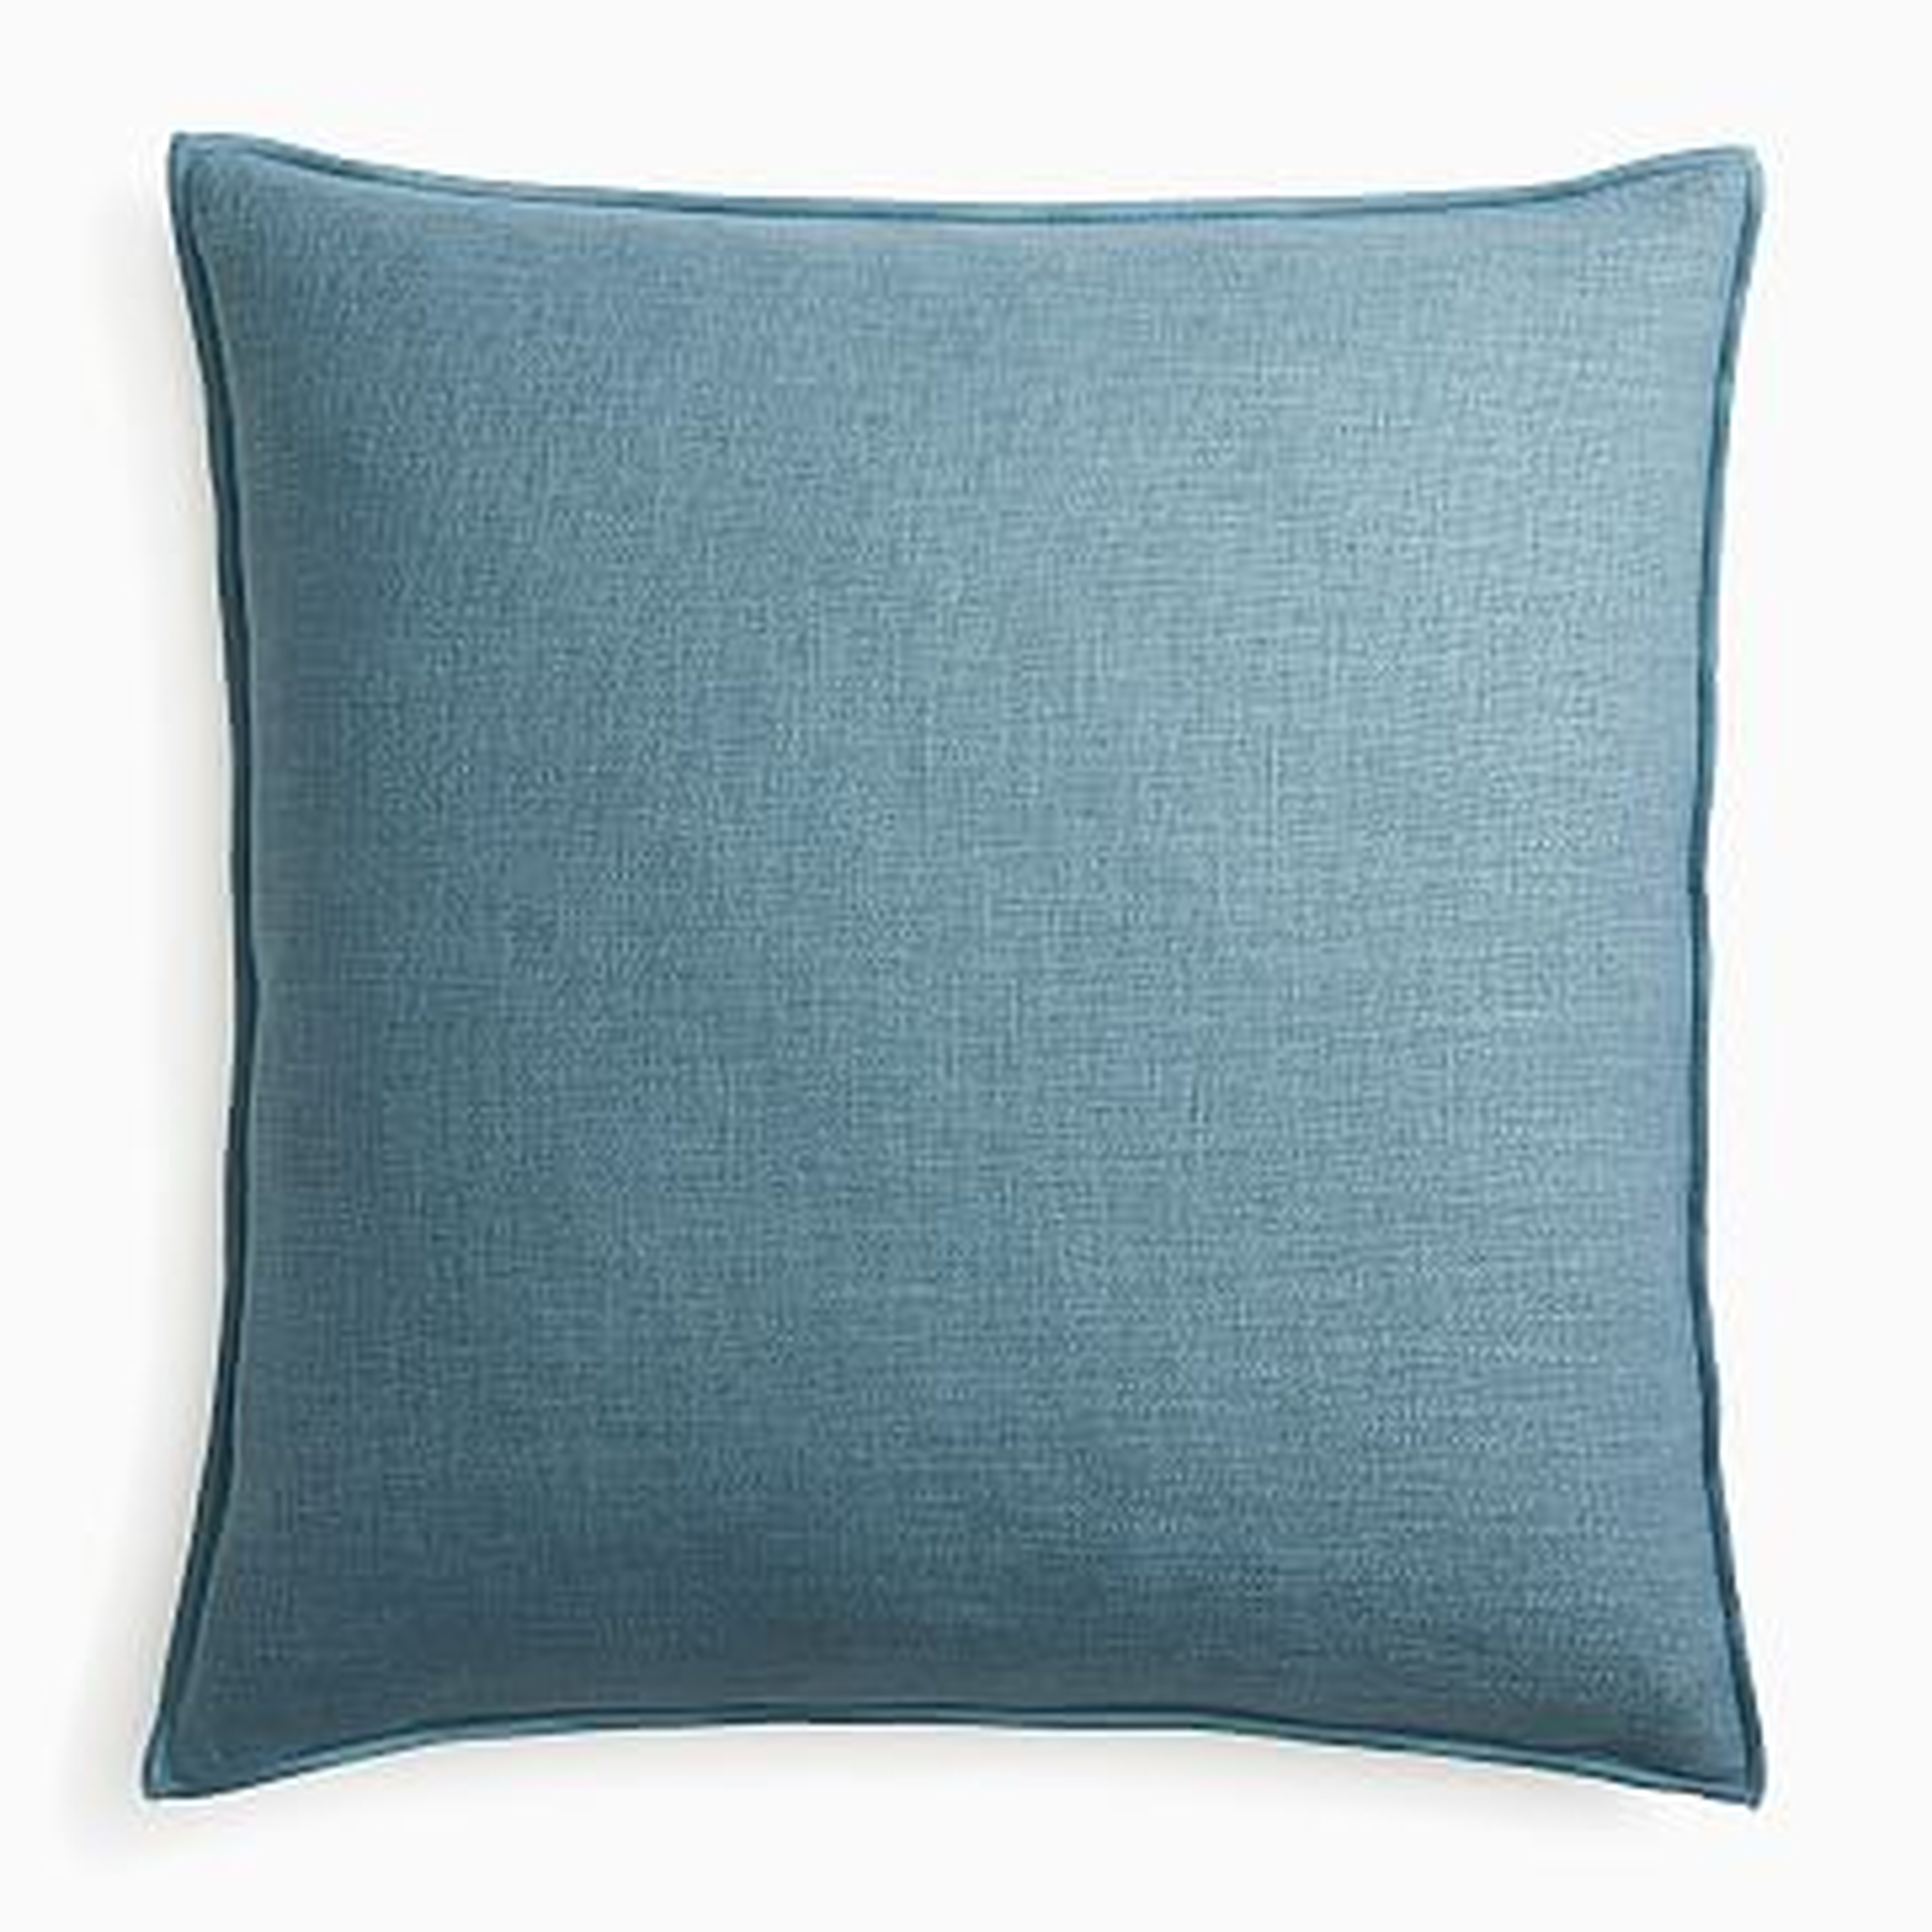 Classic Linen Pillow Cover, 24"x24", Ocean - West Elm